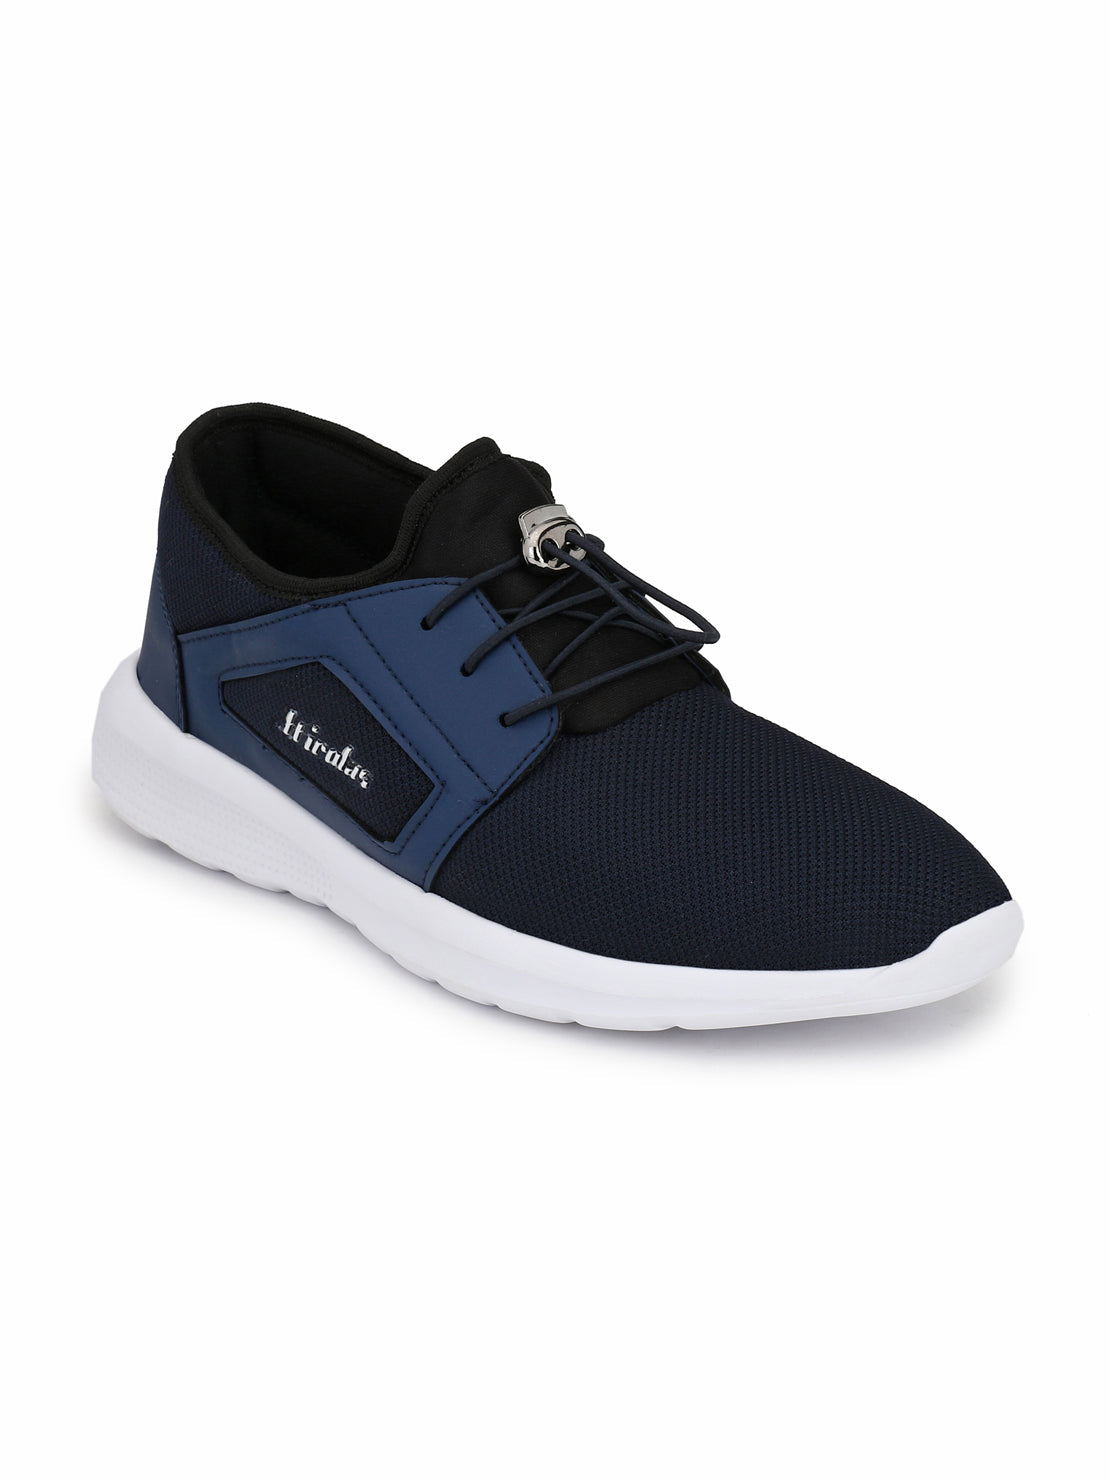 Hirolas® Men's Jezz Blue Elastic Lace Up Athleisure Sport Shoes (HRL1951EBU)